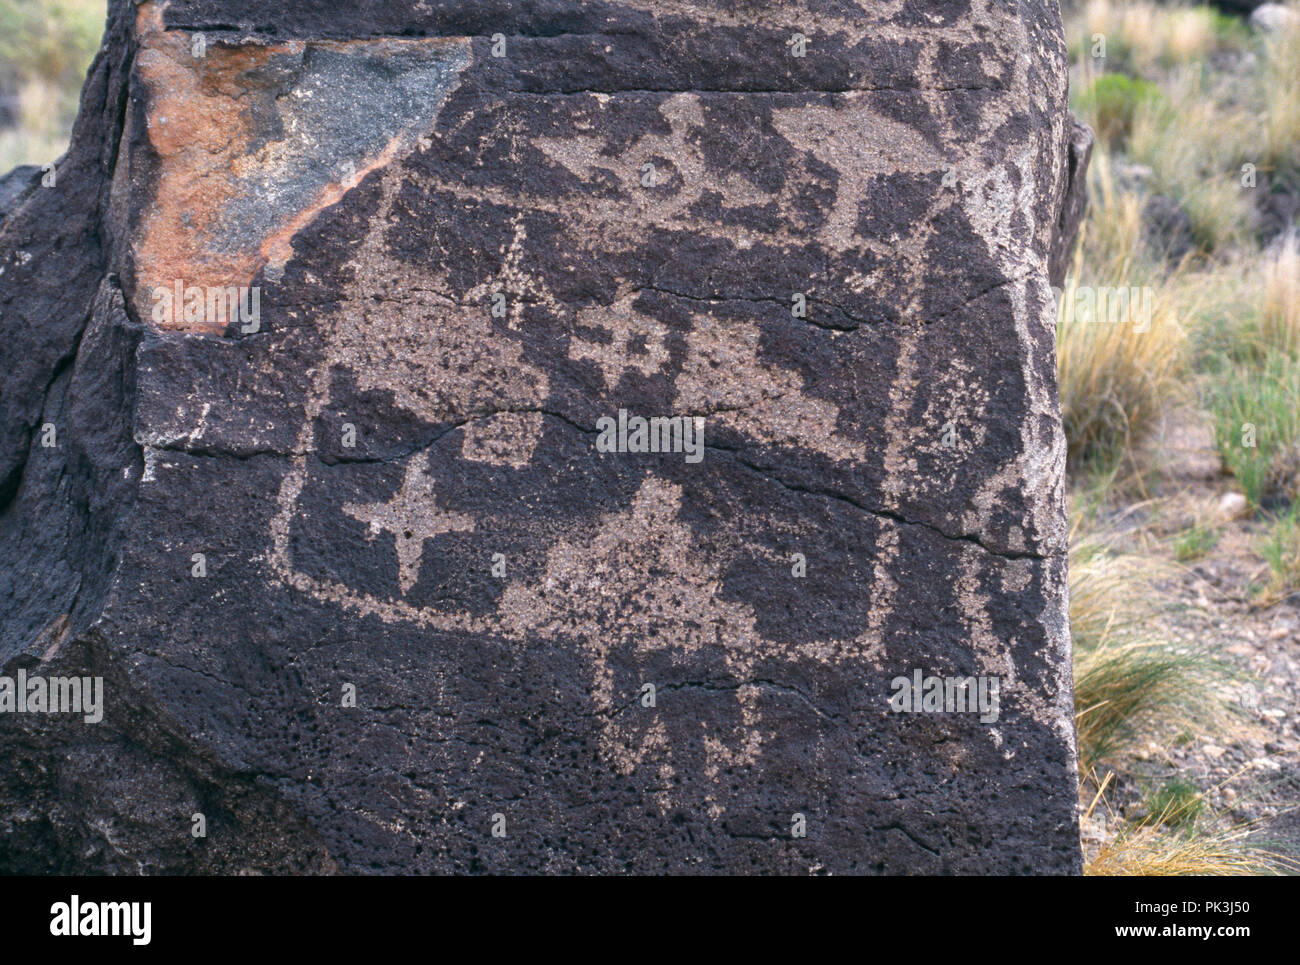 Felszeichnungen auf Basalt, Petroglyph National Monument, Albuquerque, New Mexico. Foto Stockfoto